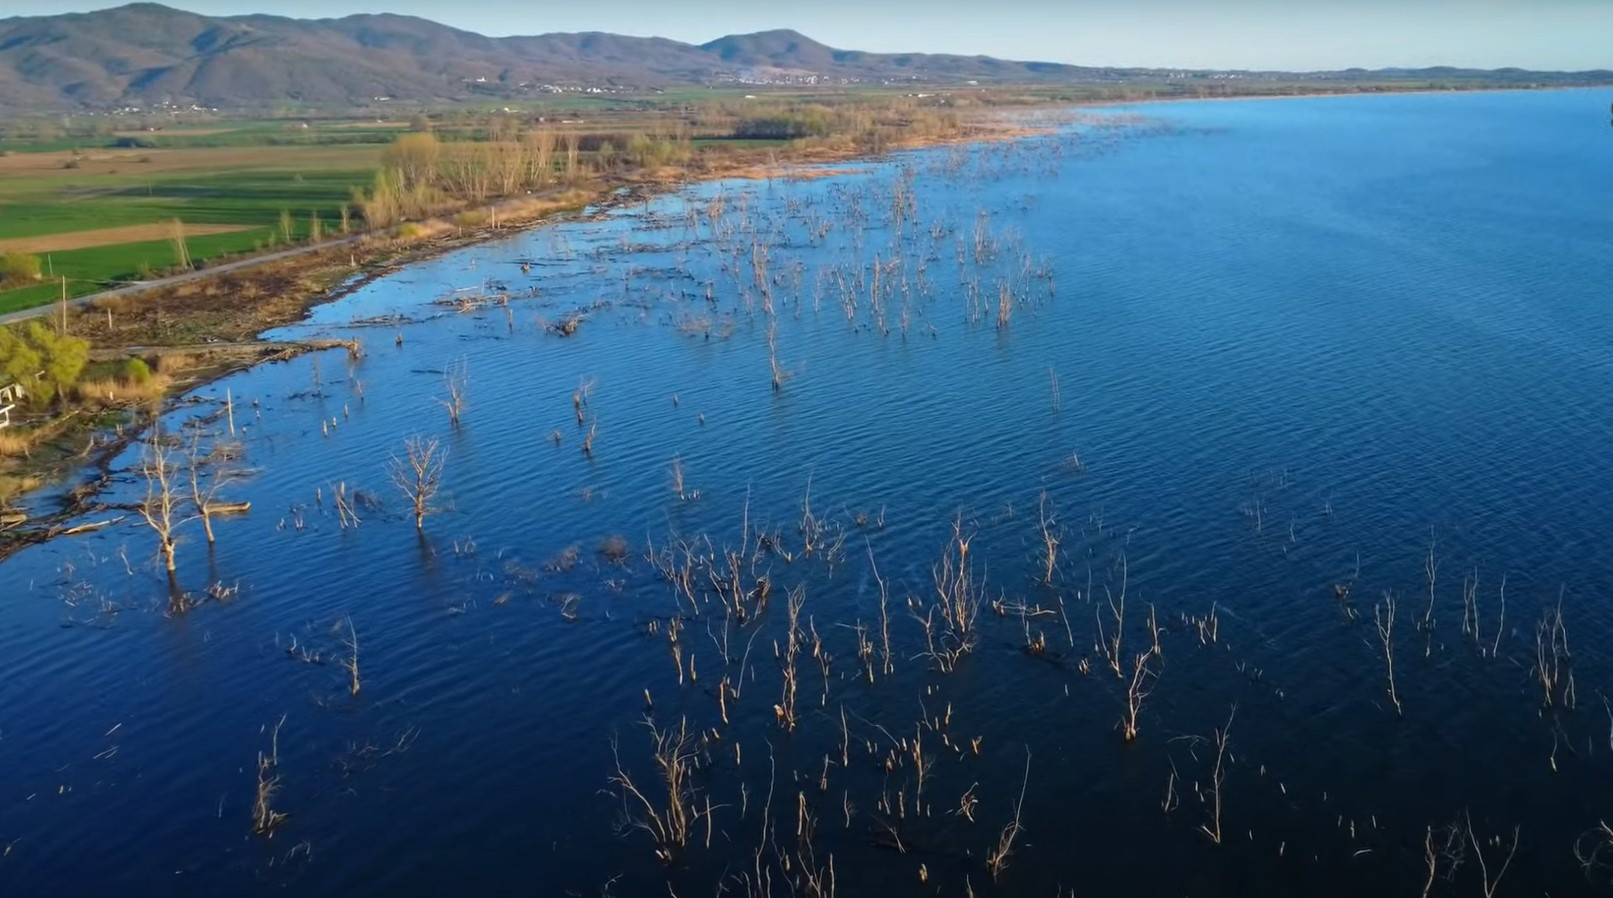 Λίμνη Δοϊράνη: Ένας σπουδαίος υδροβιότοπος στα σύνορα της Ελλάδας